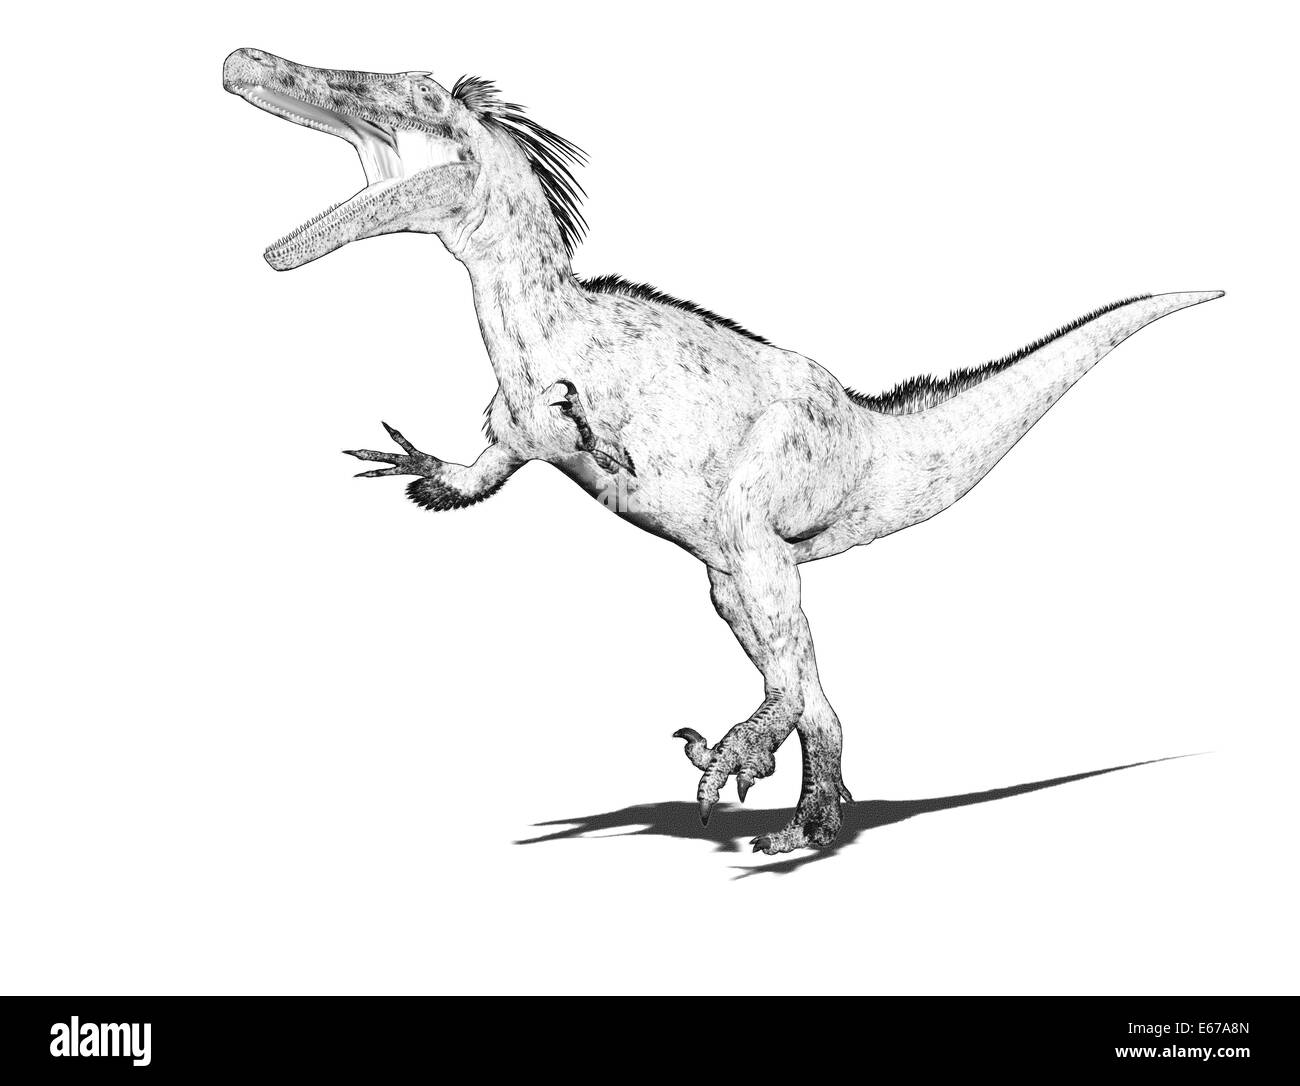 Dinosaurier Austroraptor / dinosaur Austroraptor Stock Photo